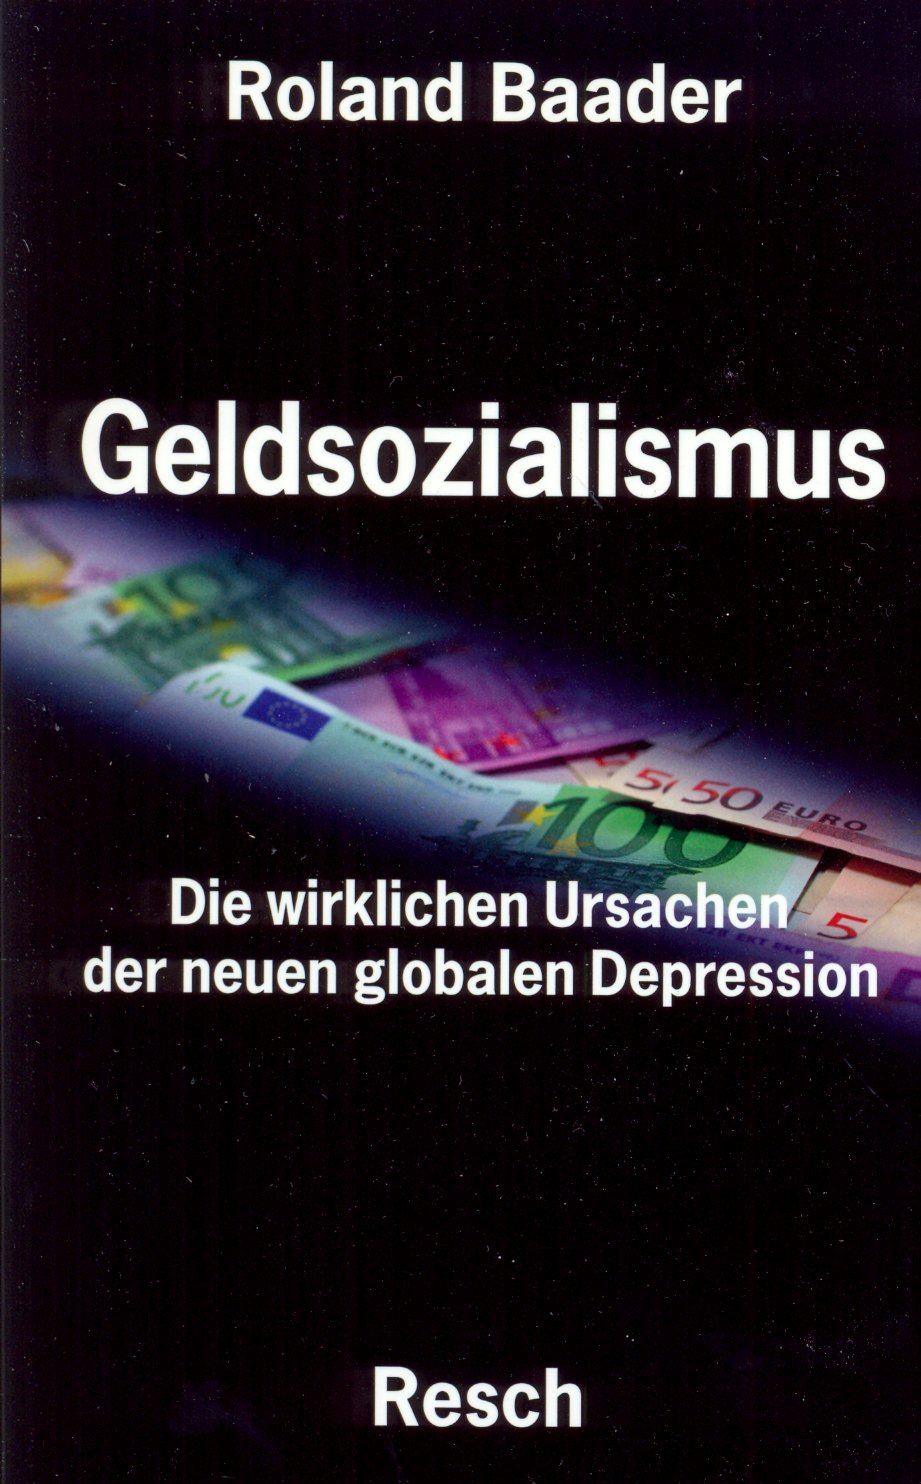 GELDSOZIALISMUS - DIE WIRKLICHE URSACHE DER NEUEN GLOBALEN DEPRESSION